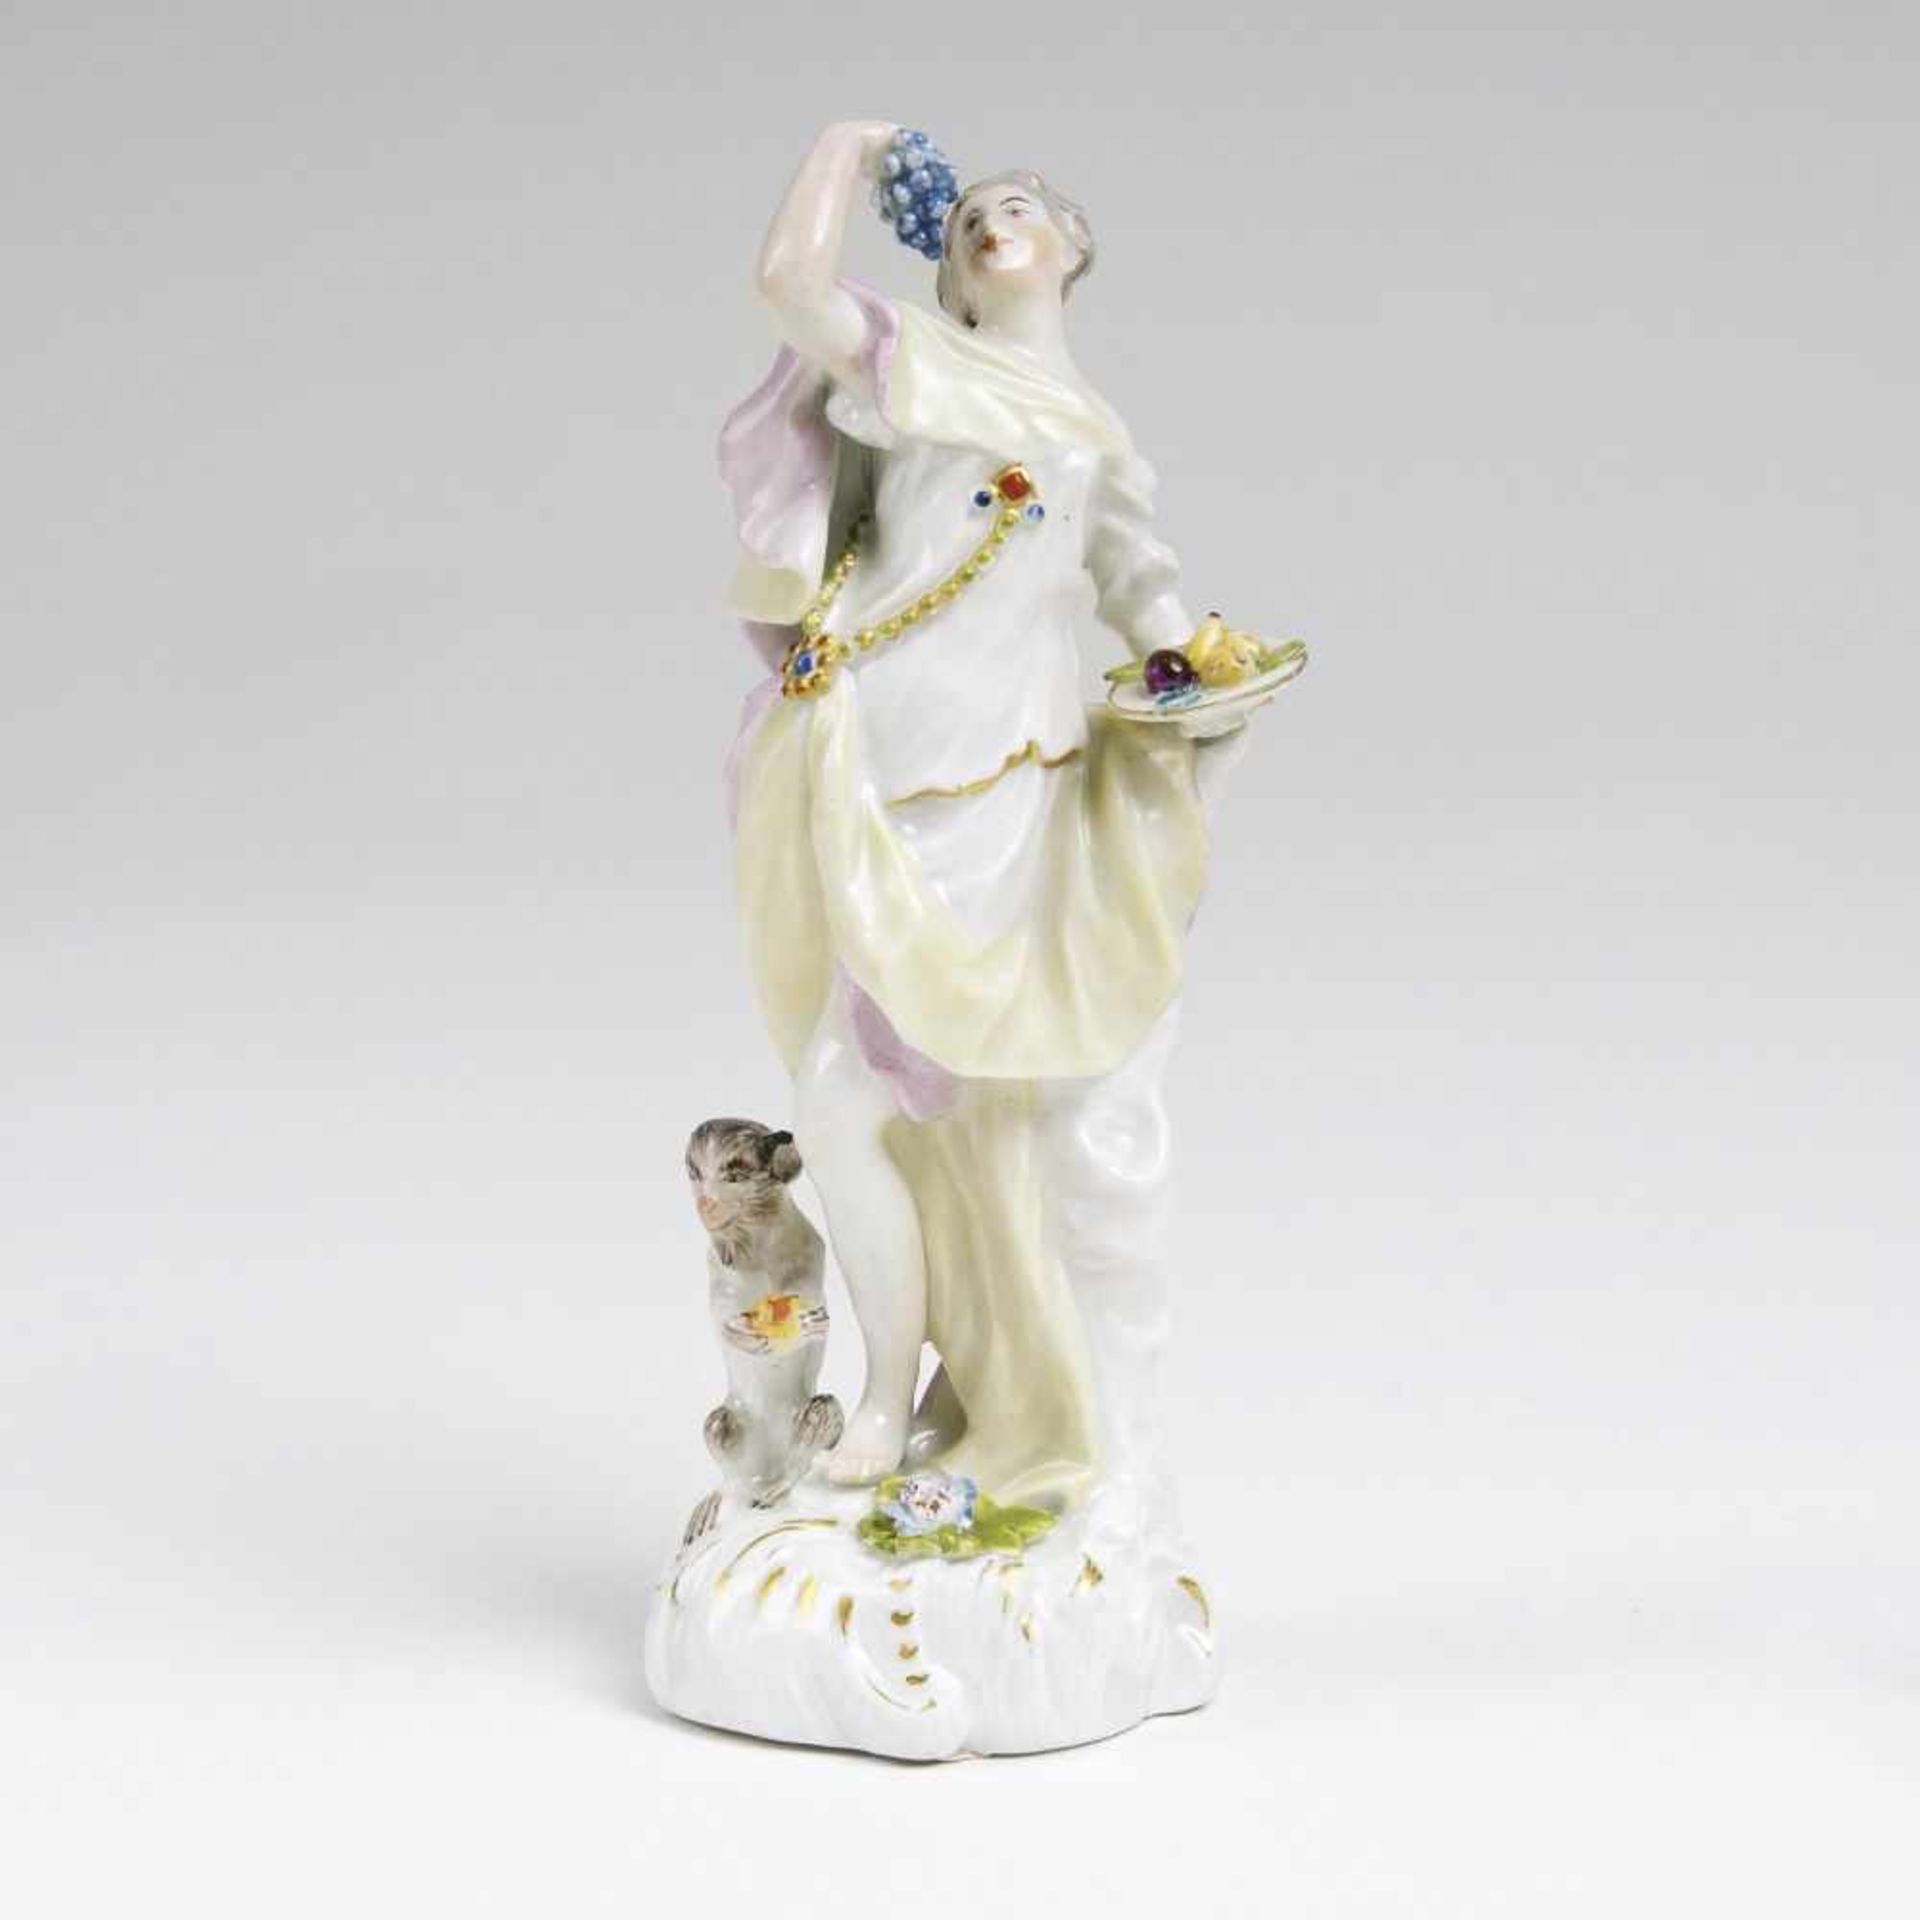 Figur 'Weibliche Allegorie mit Äffchen'Meissen, 18. Jh. Porzellan, farbig staffiert. Weibliche Figur